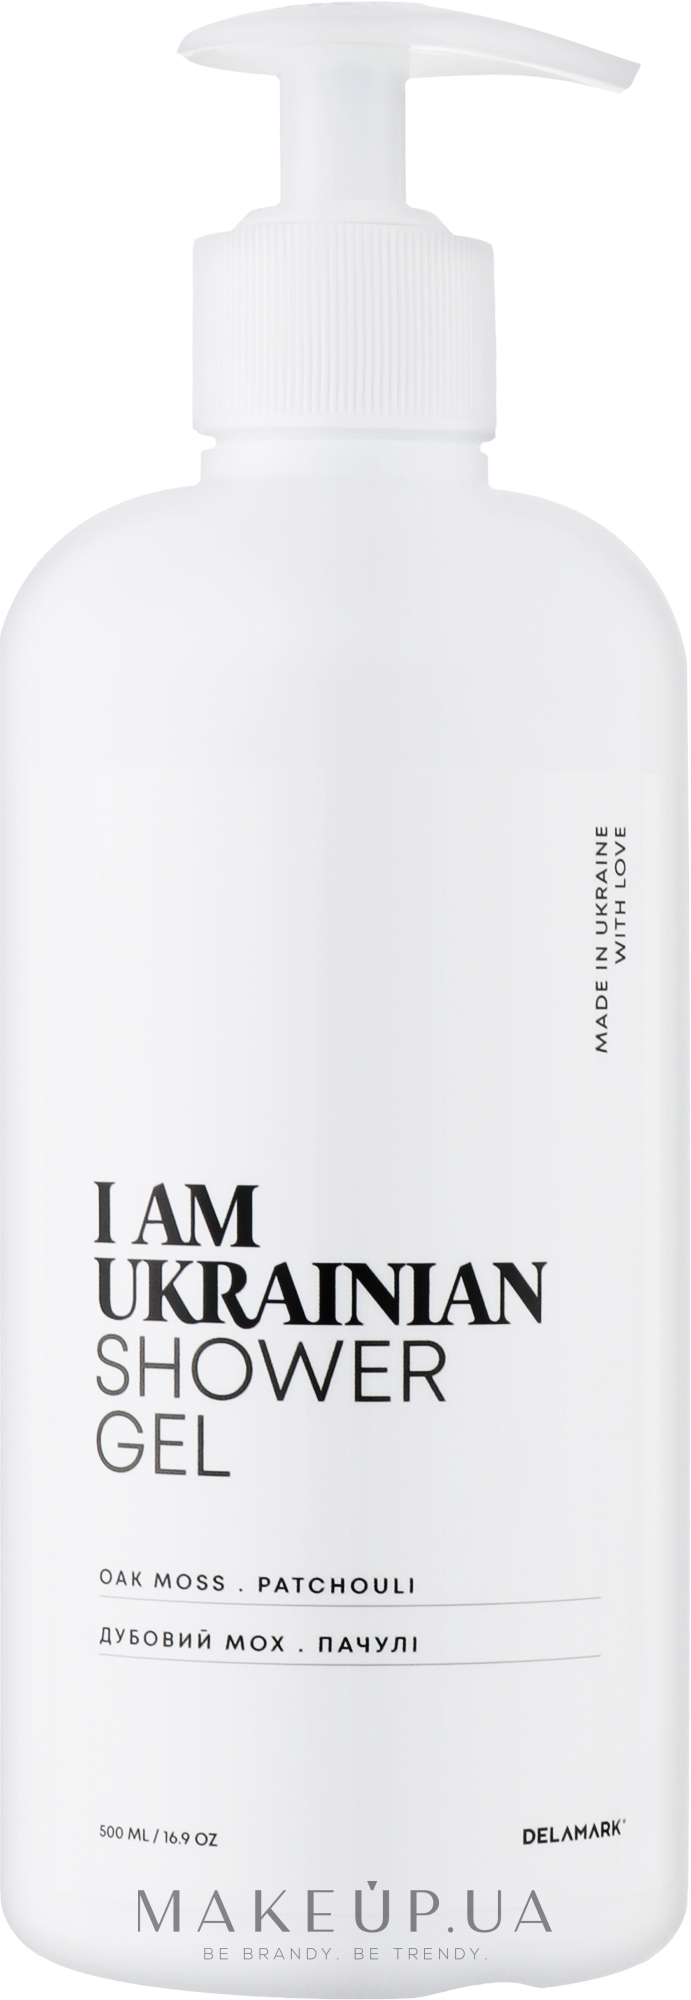 Гель для душа с ароматом дубового мха и пачули - I Am Ukrainian Shower Gel — фото 500ml